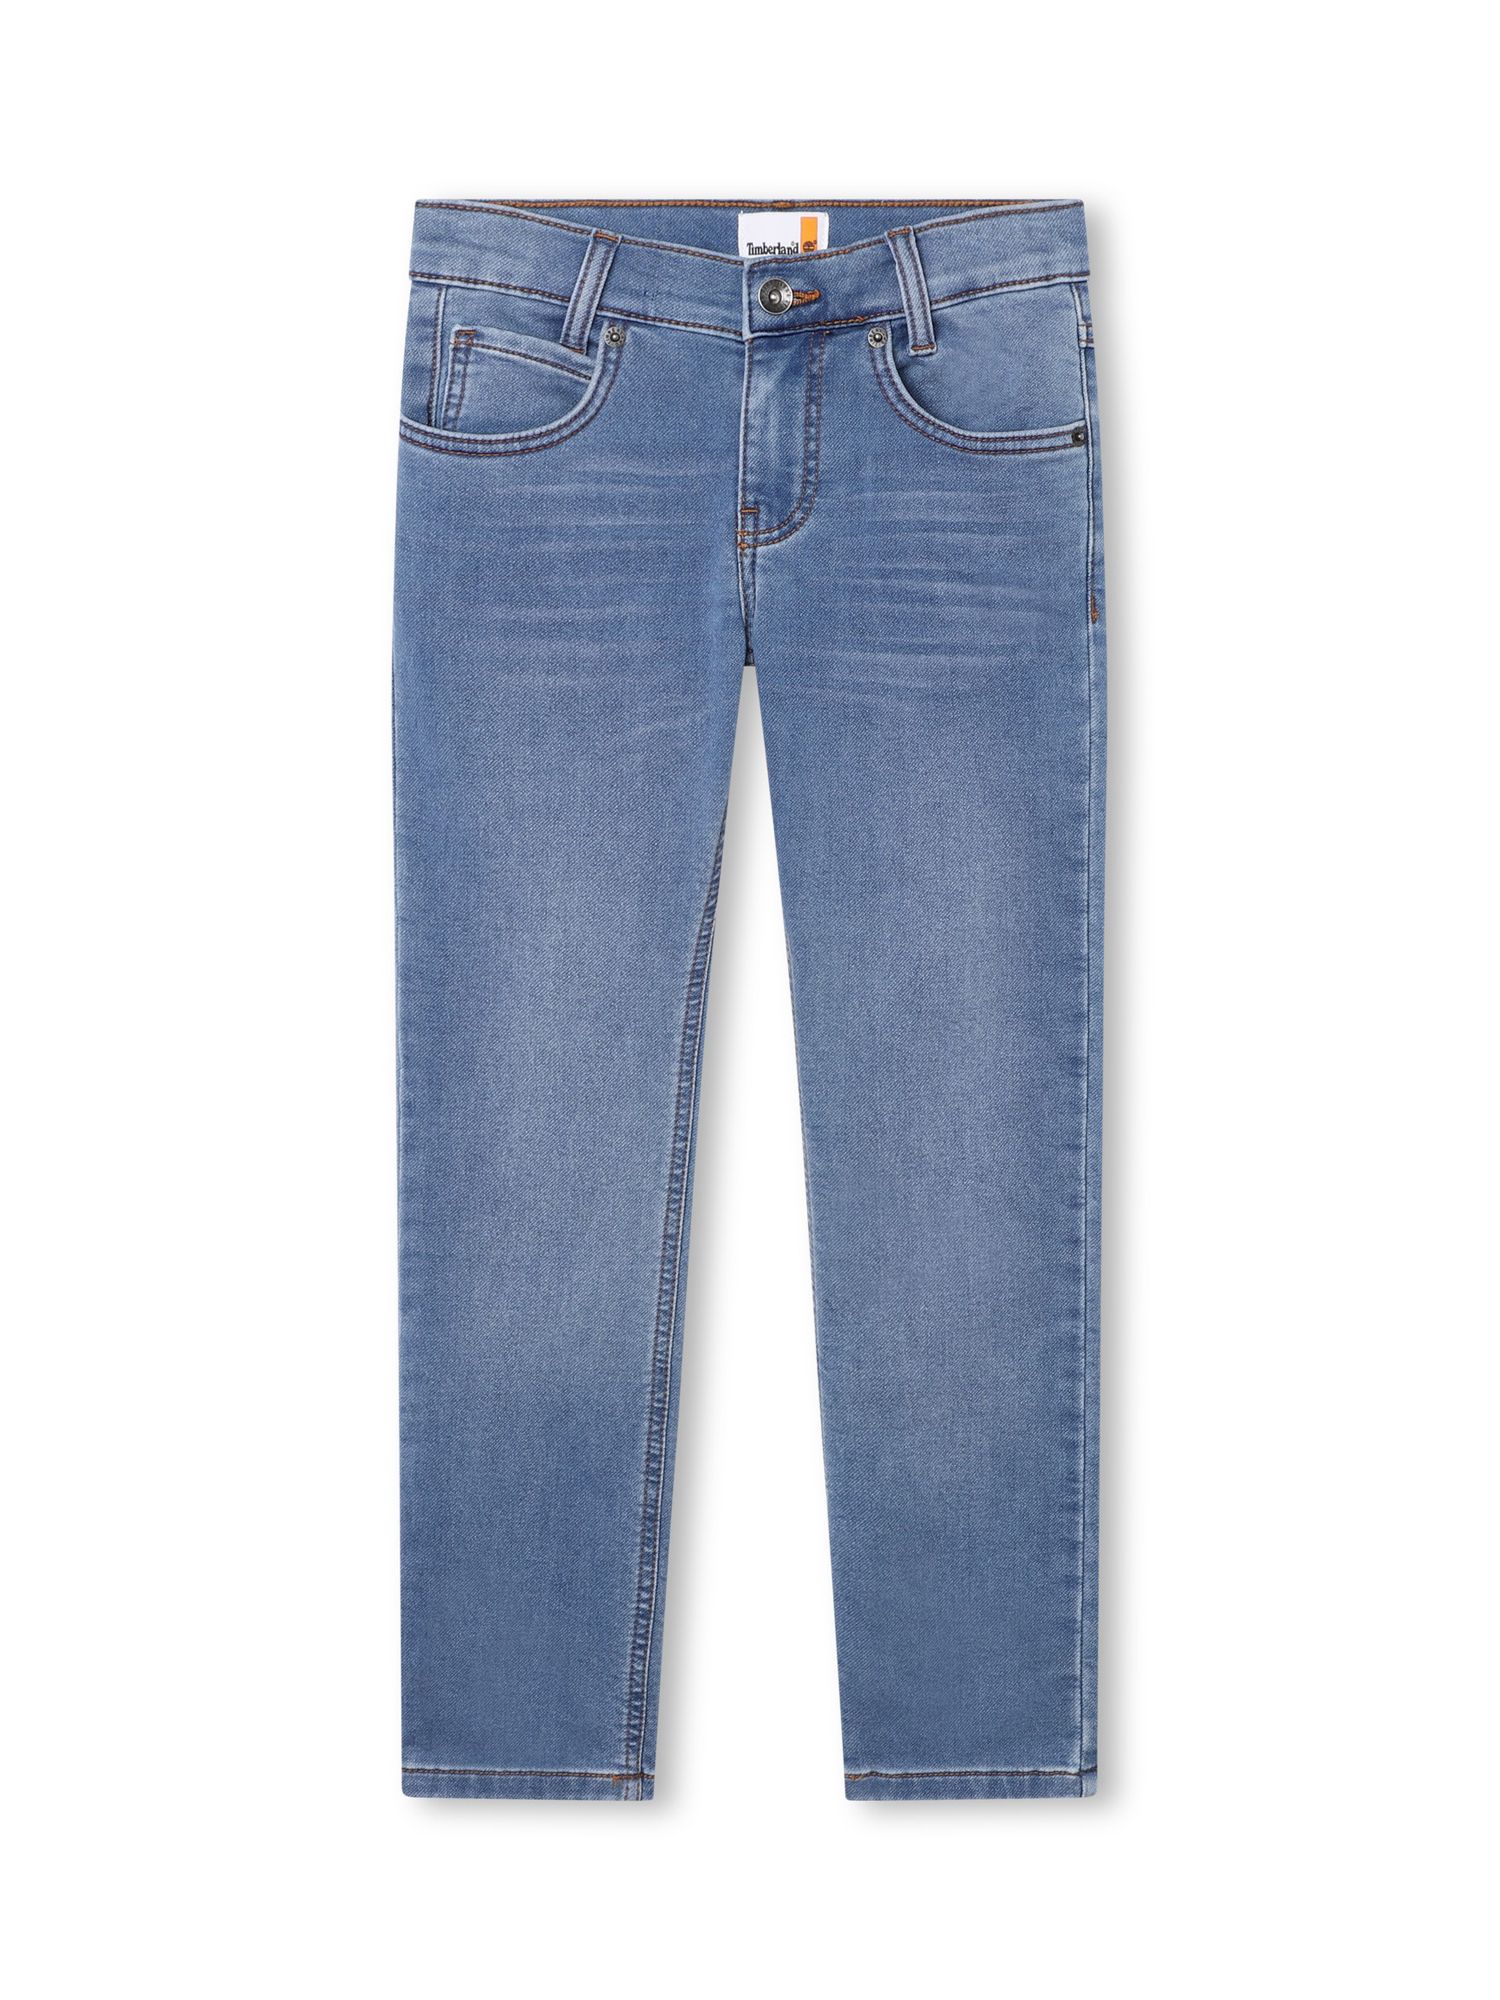 Buy Timberland Kids' Denim Jeans, Blue Online at johnlewis.com